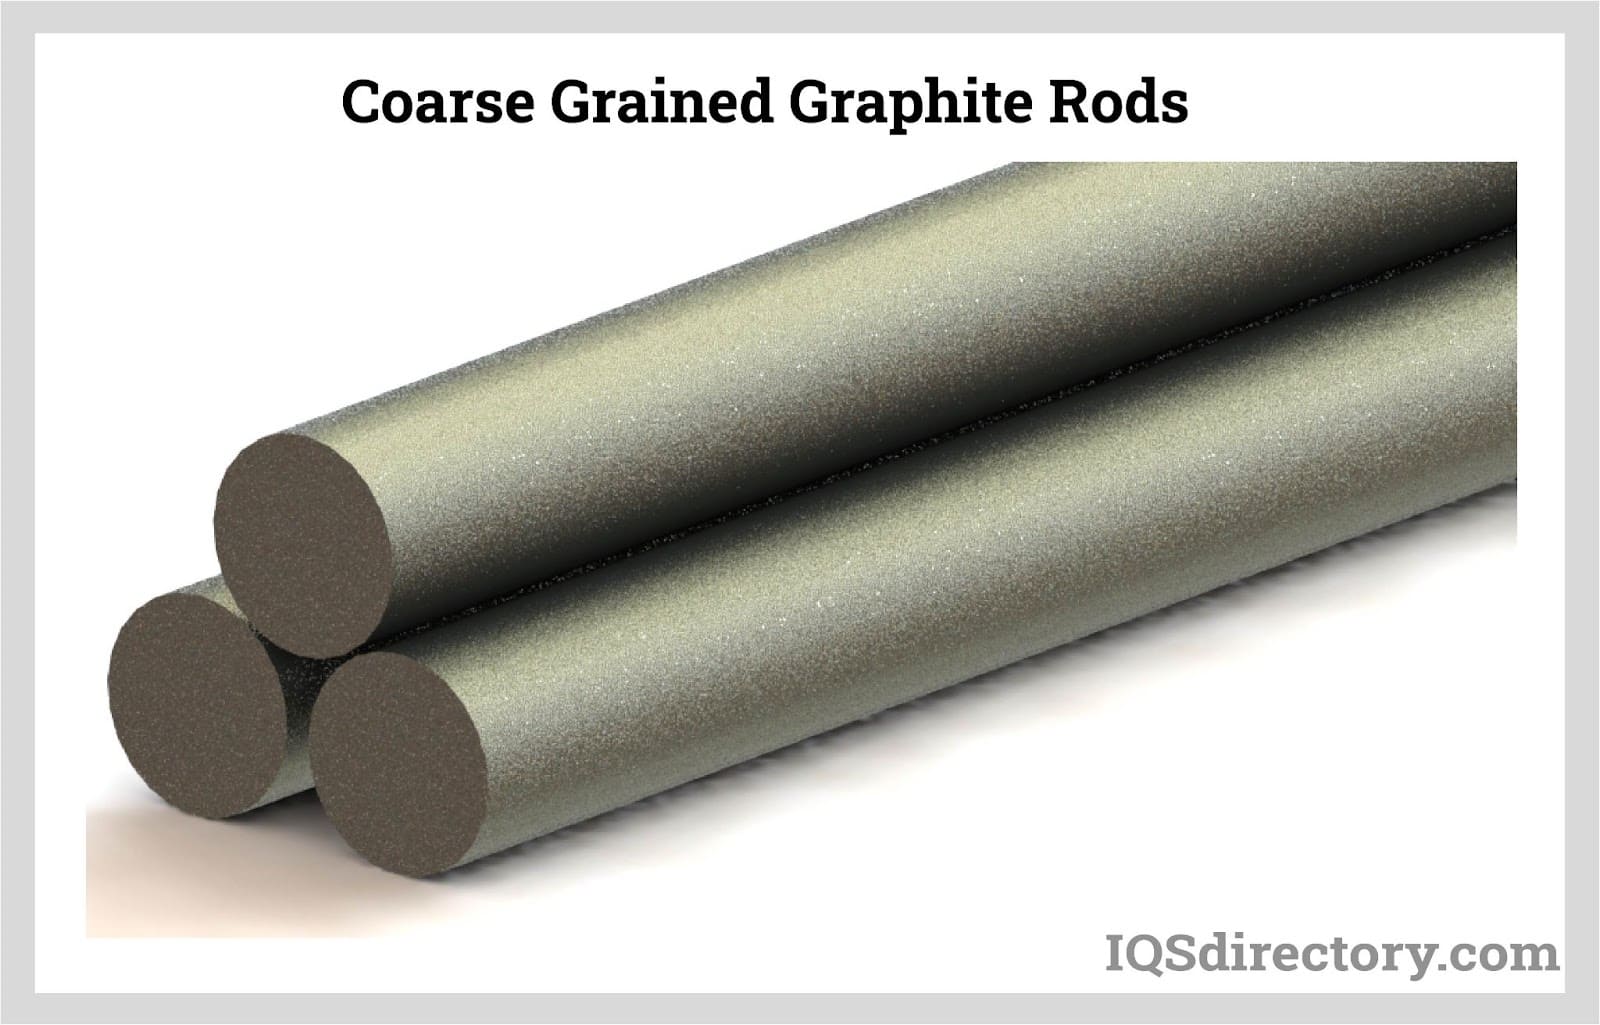 Coarse Grained Graphite Rods